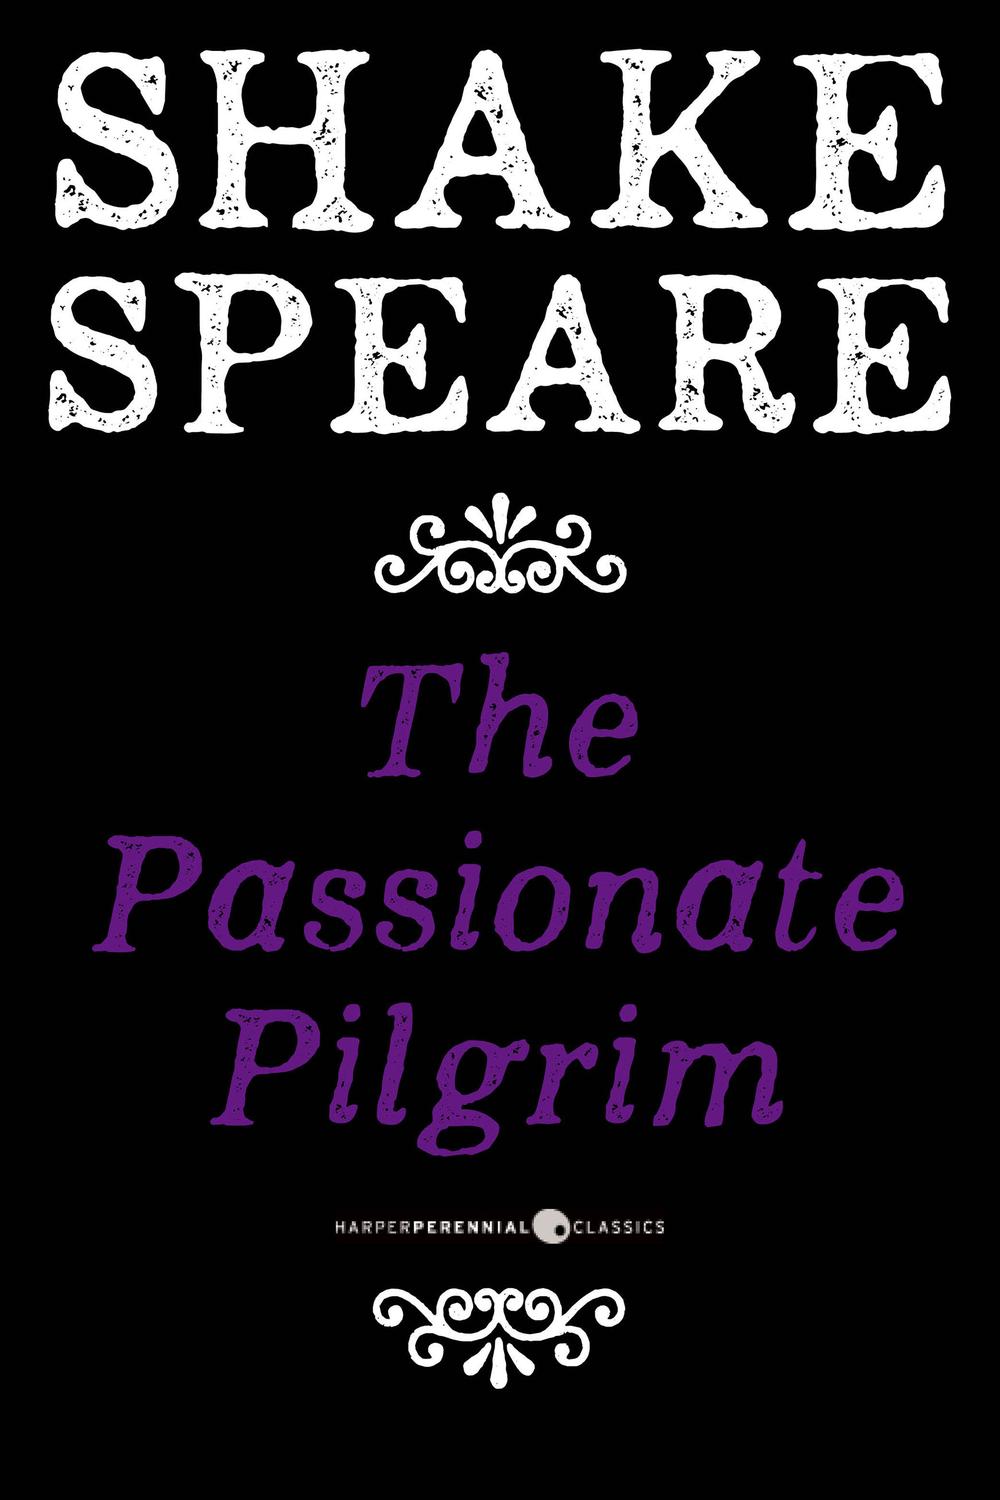 The Passionate Pilgrim - William Shakespeare